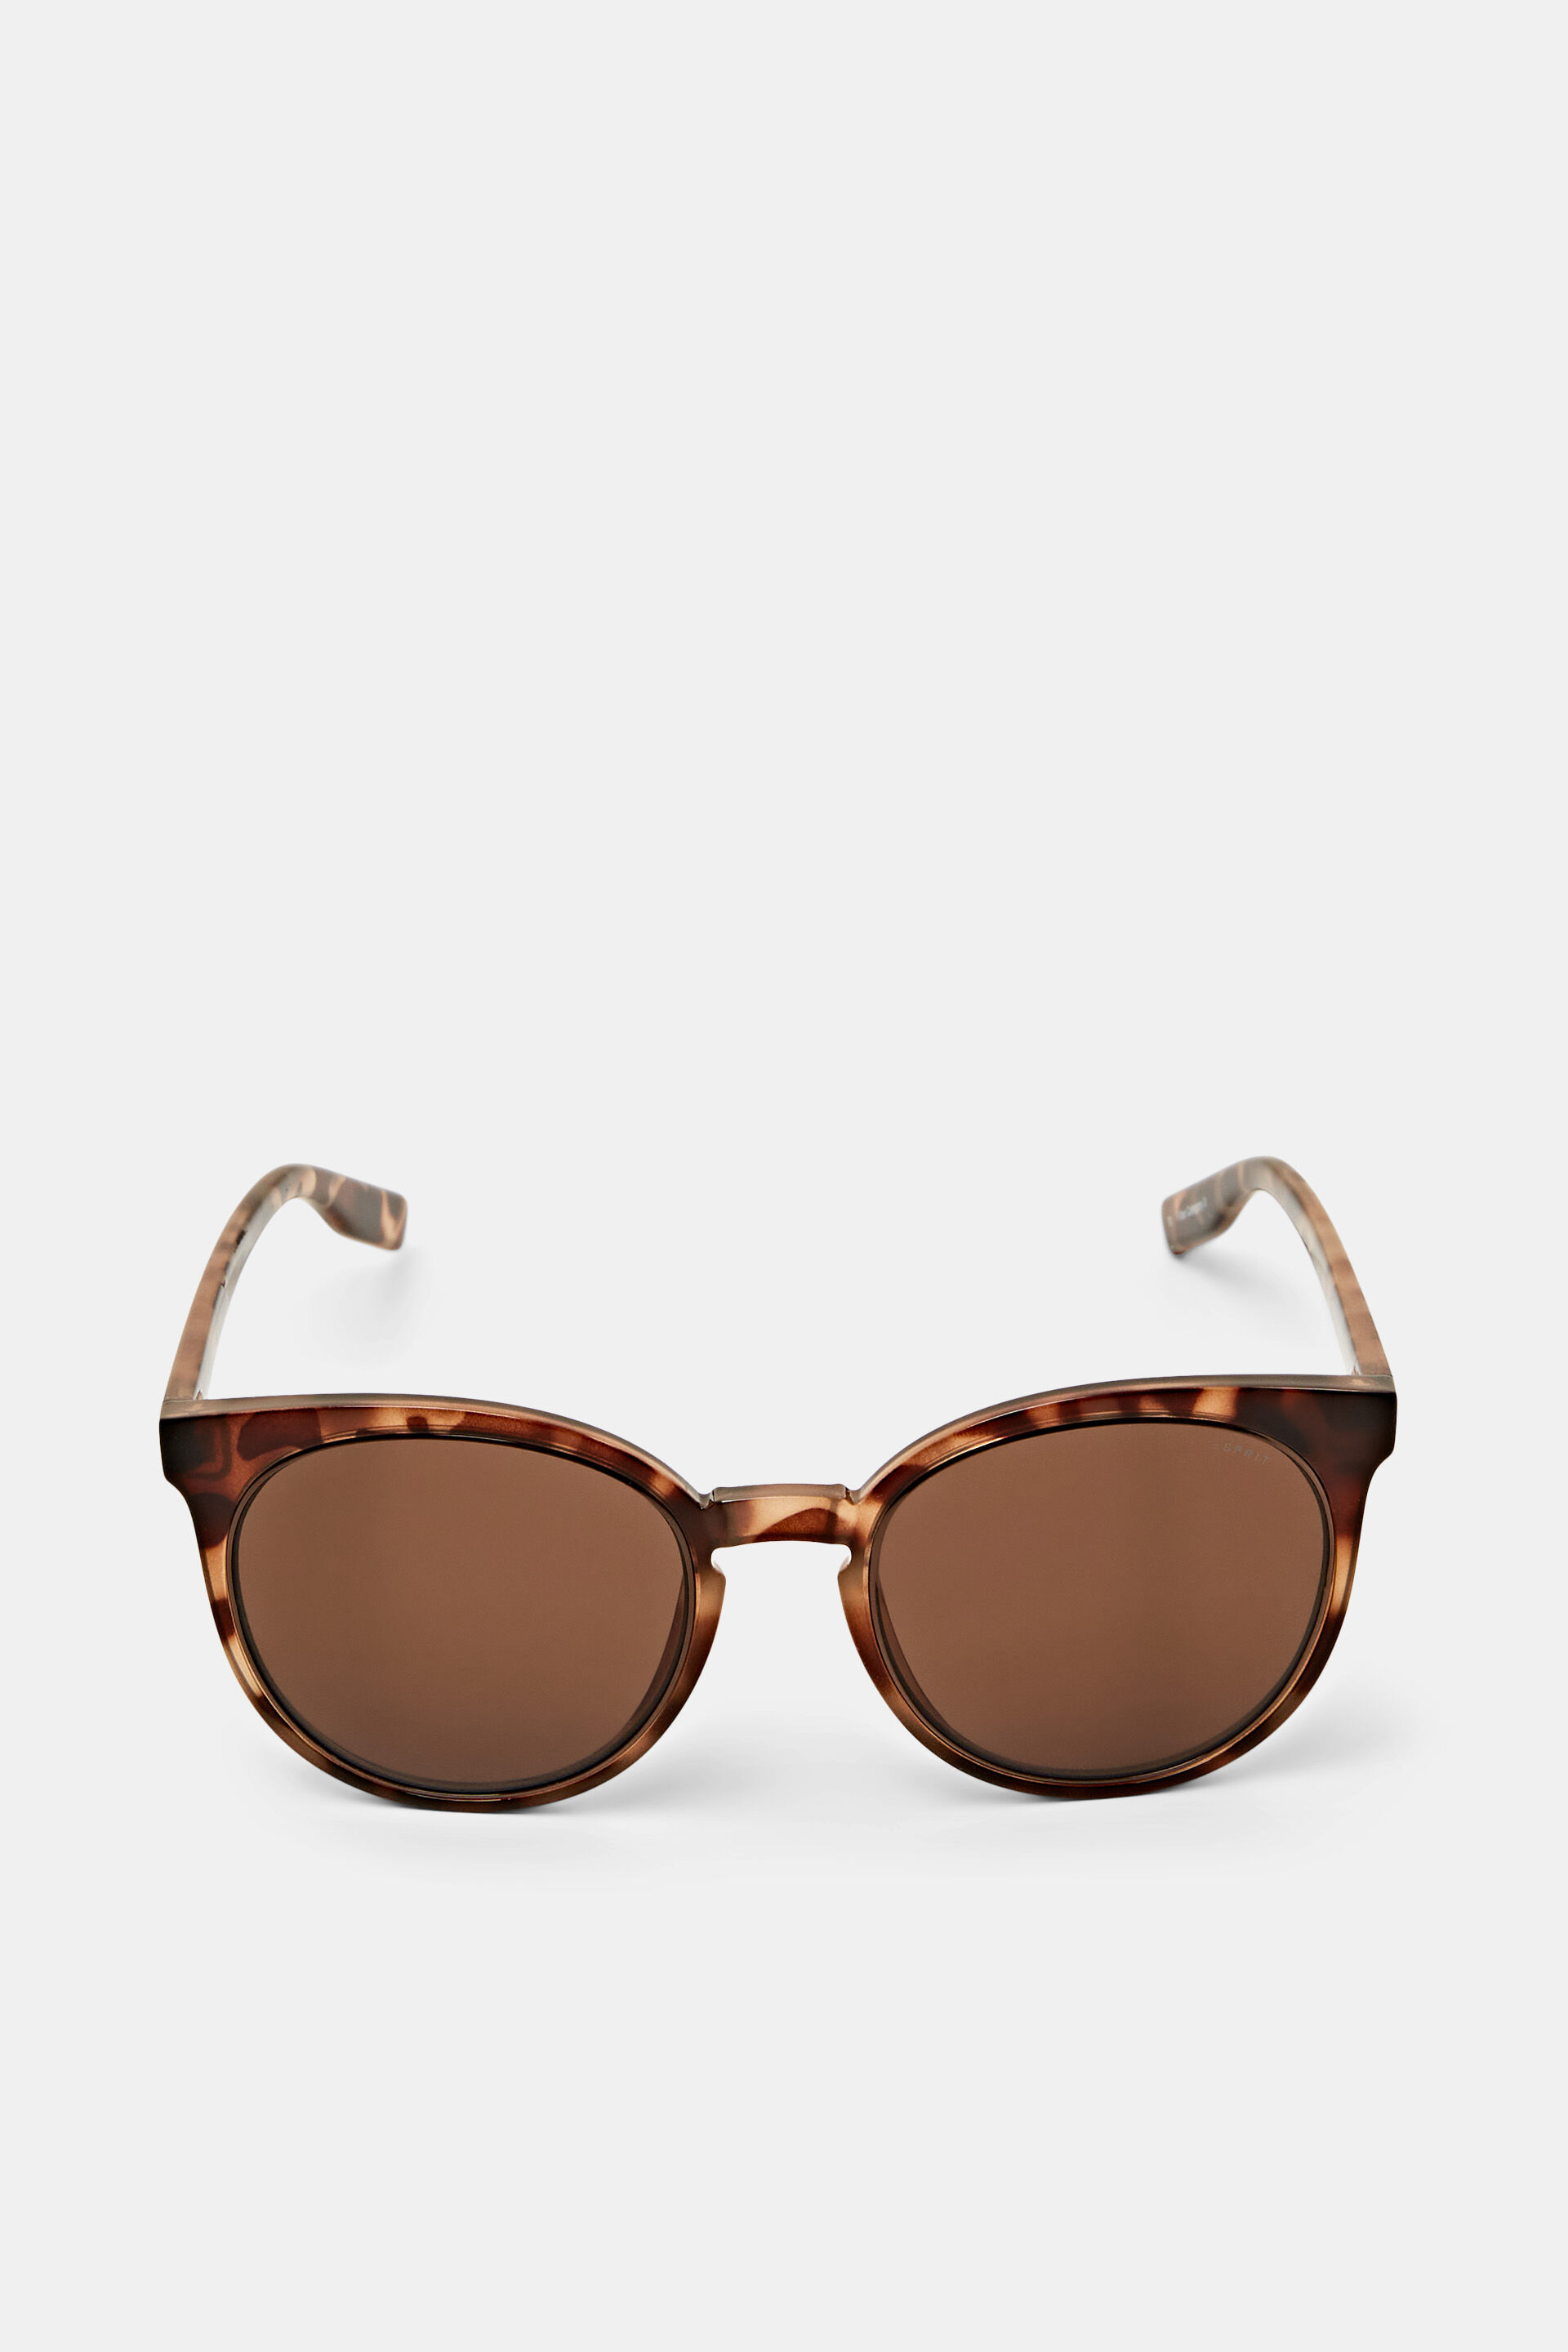 Esprit Round framed statement sunglasses